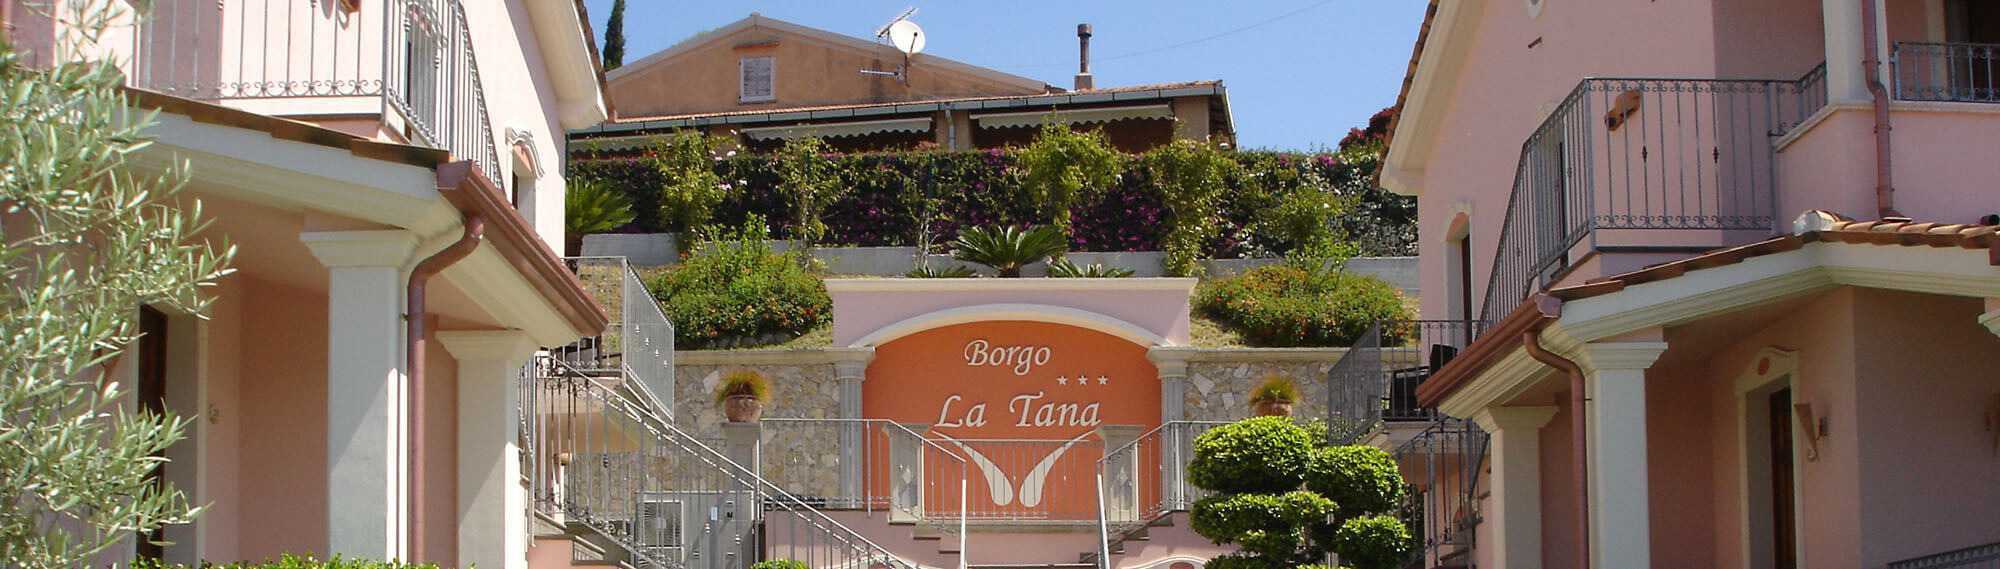 Villette Hotel Ristorante Borgo La Tana